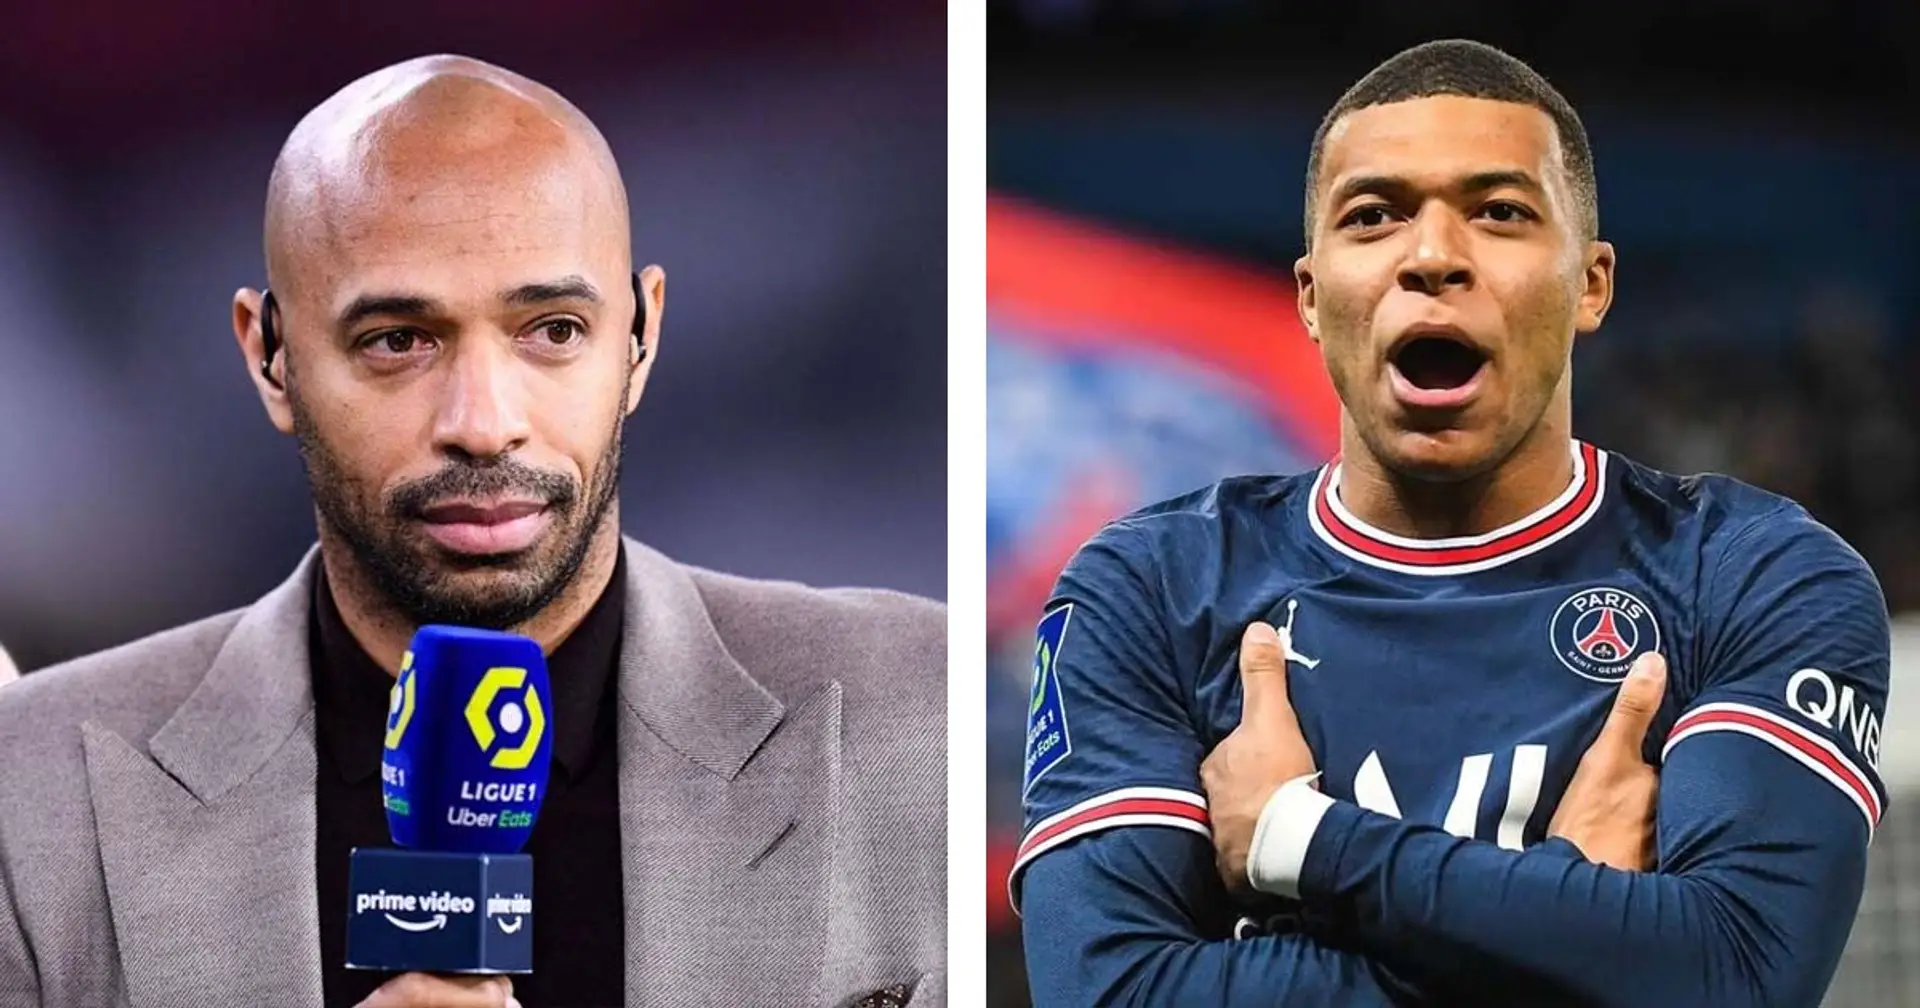 "Soyons contents qu’il soit Français", Thierry Henry accorde une longue interview à la gloire de Mbappé